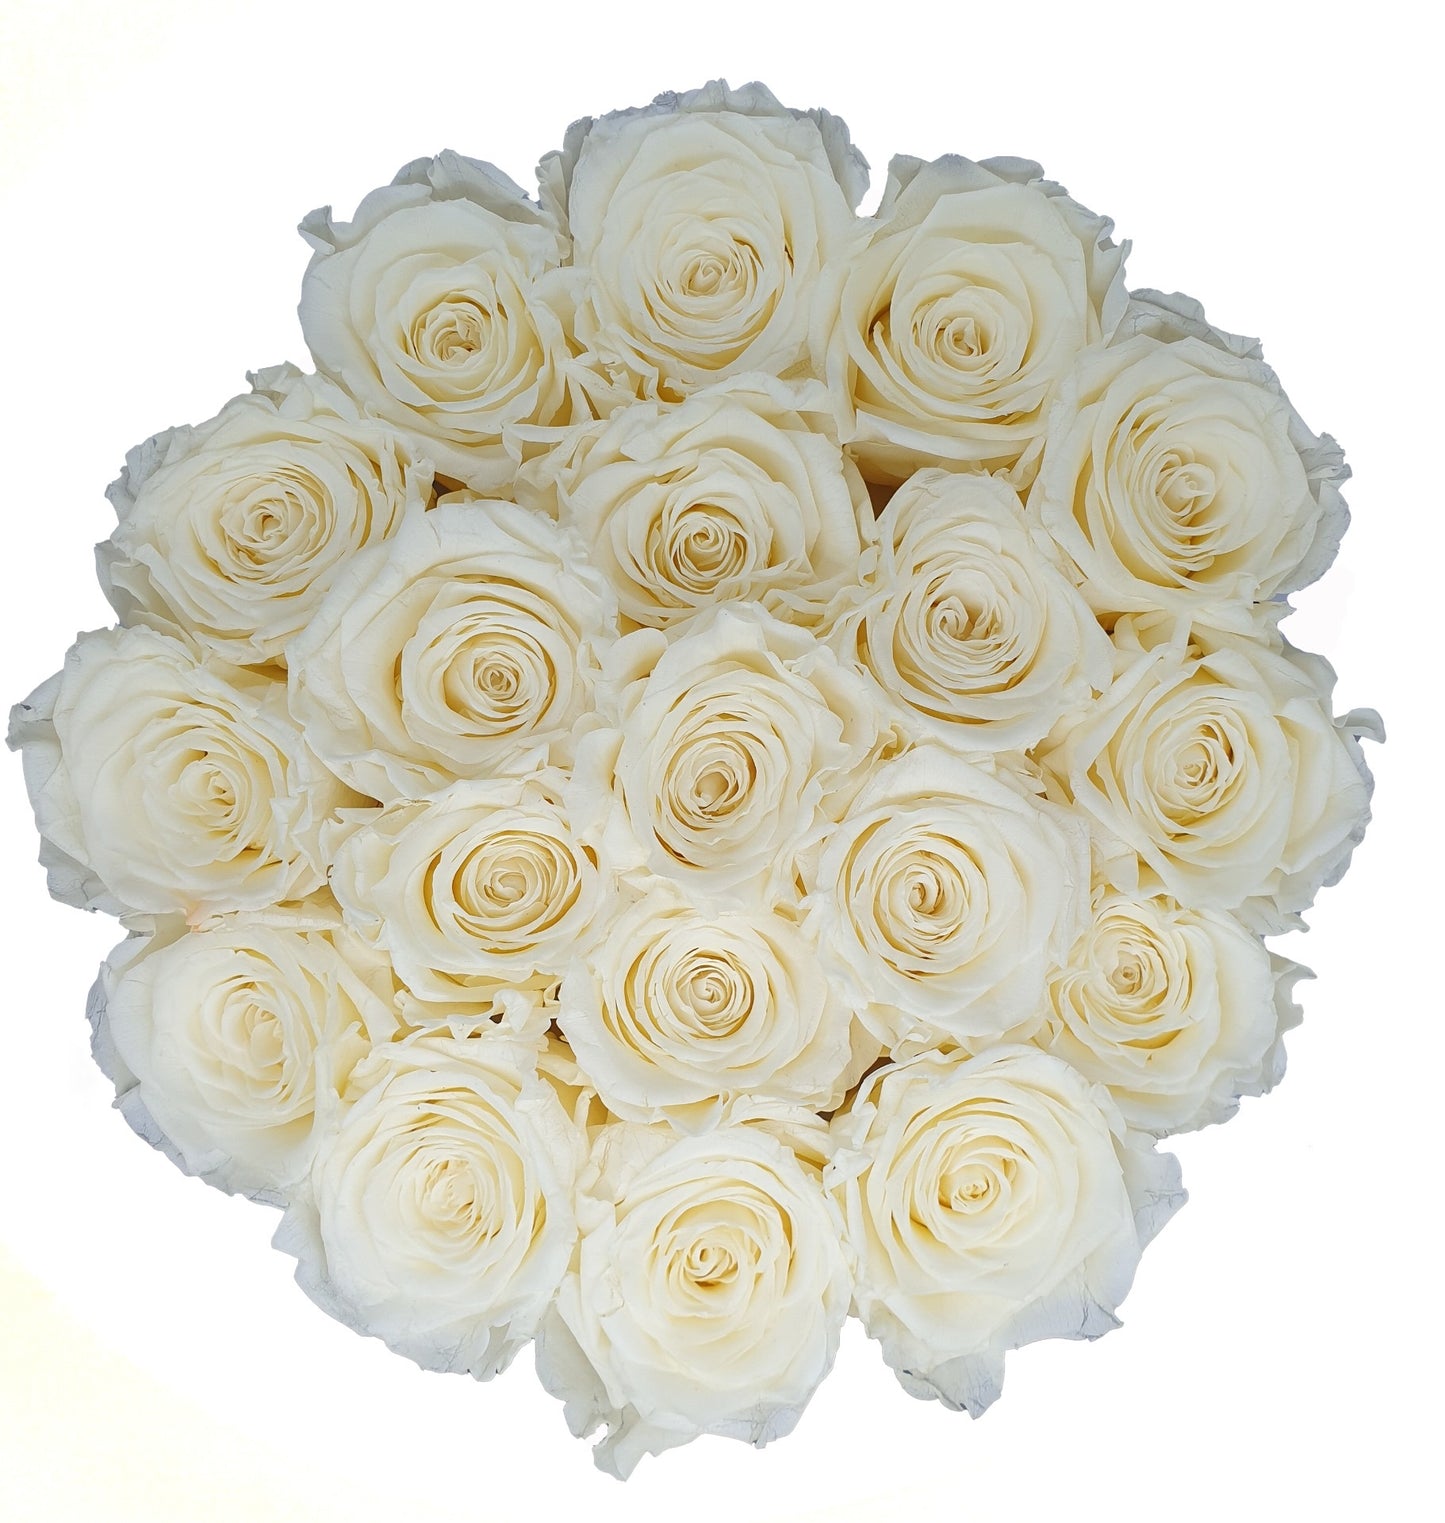 Flowerbox de Rosas Preservadas Champanhe com Bombons Ferrero Rocher®